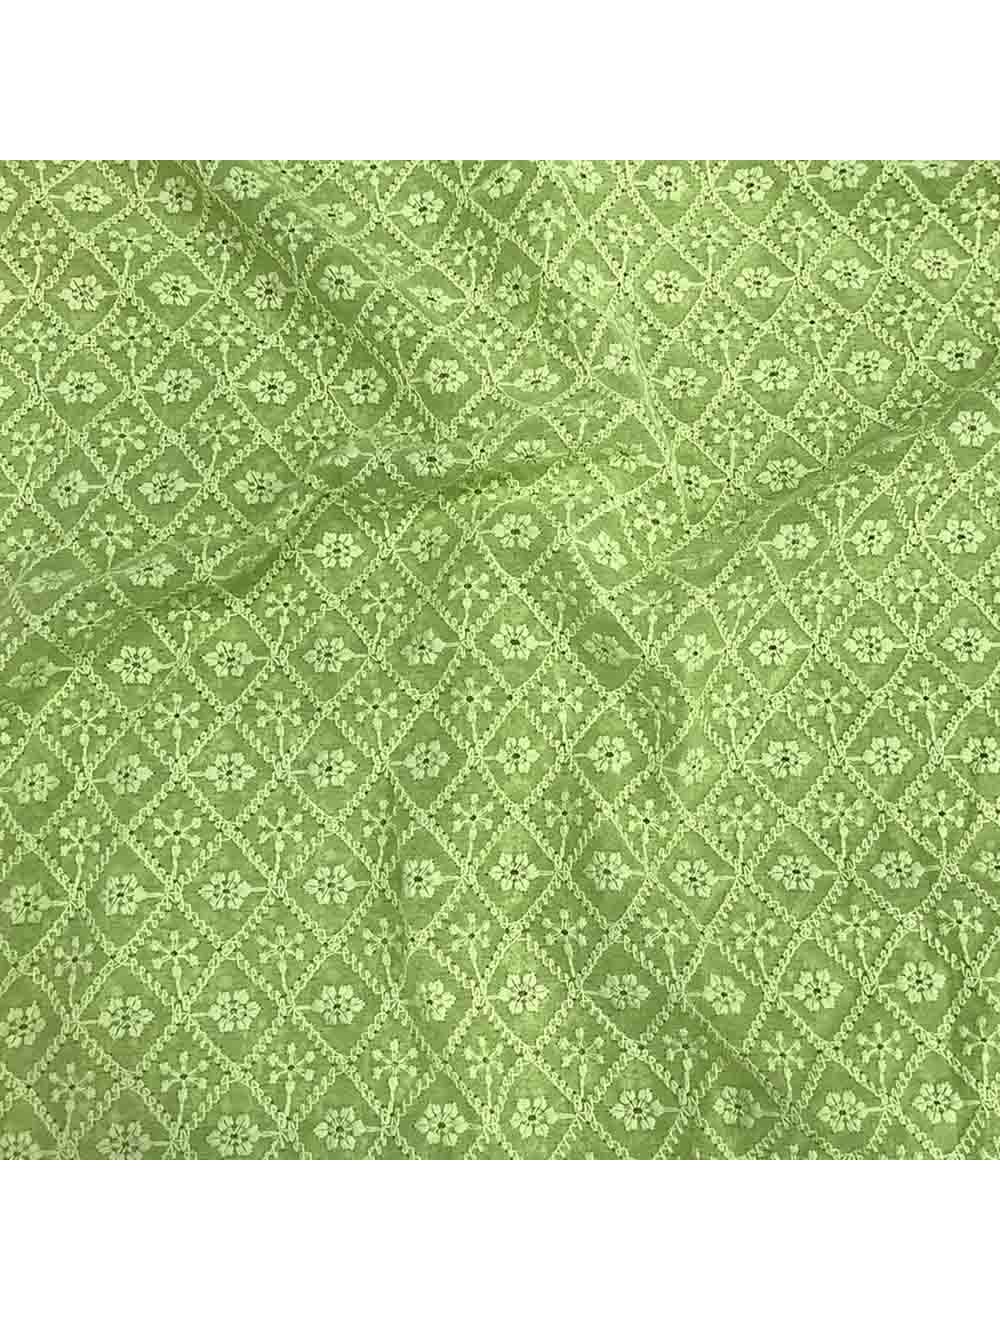 Pista Green Checks Lucknowi Chikan Embroidery Georgette Fabric | Saroj ...